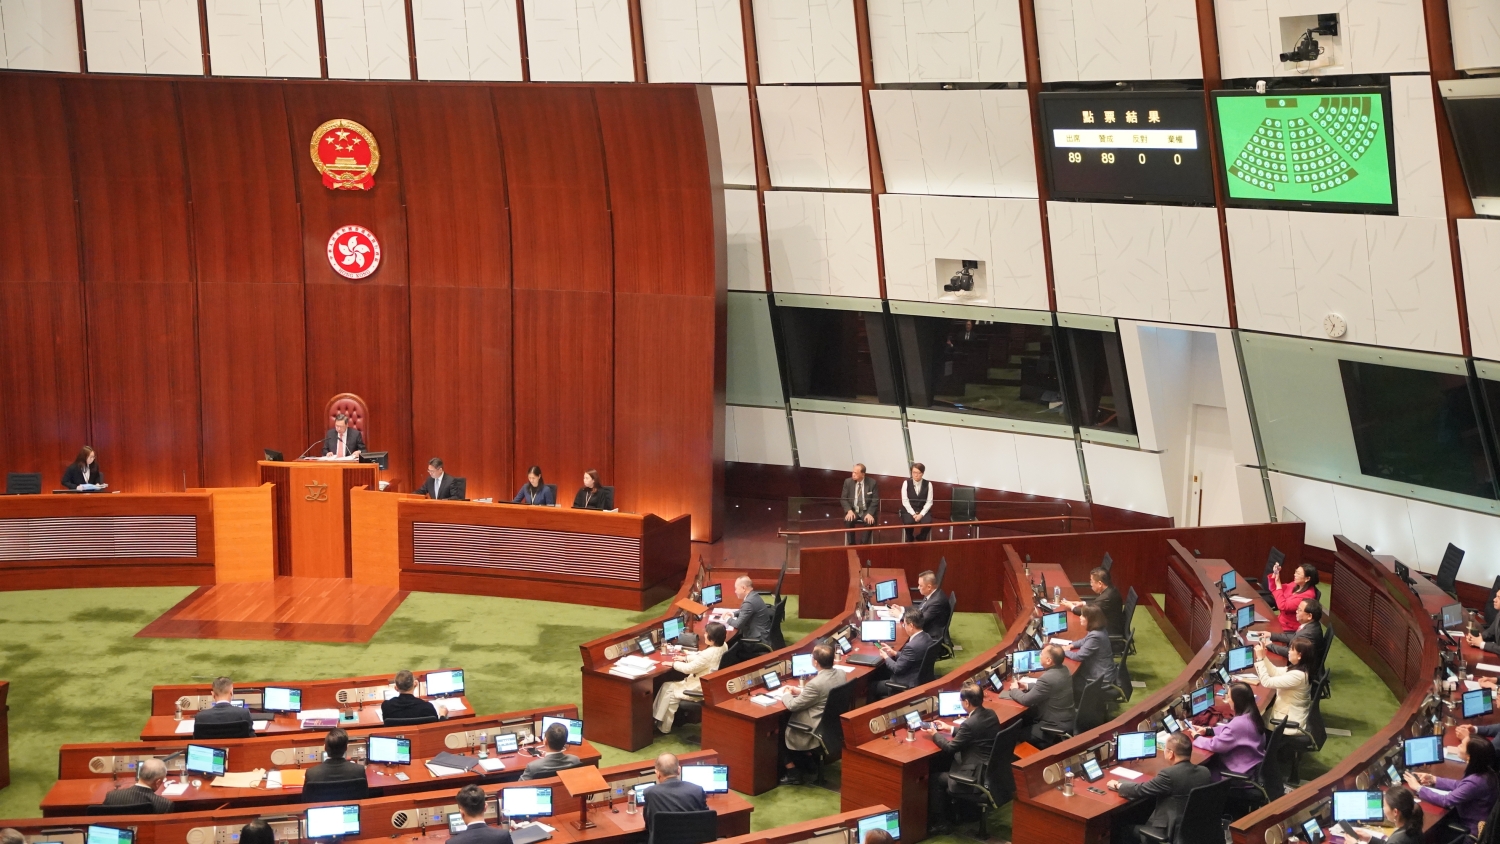 【來論】立法護穩定 香港迎來發展春天